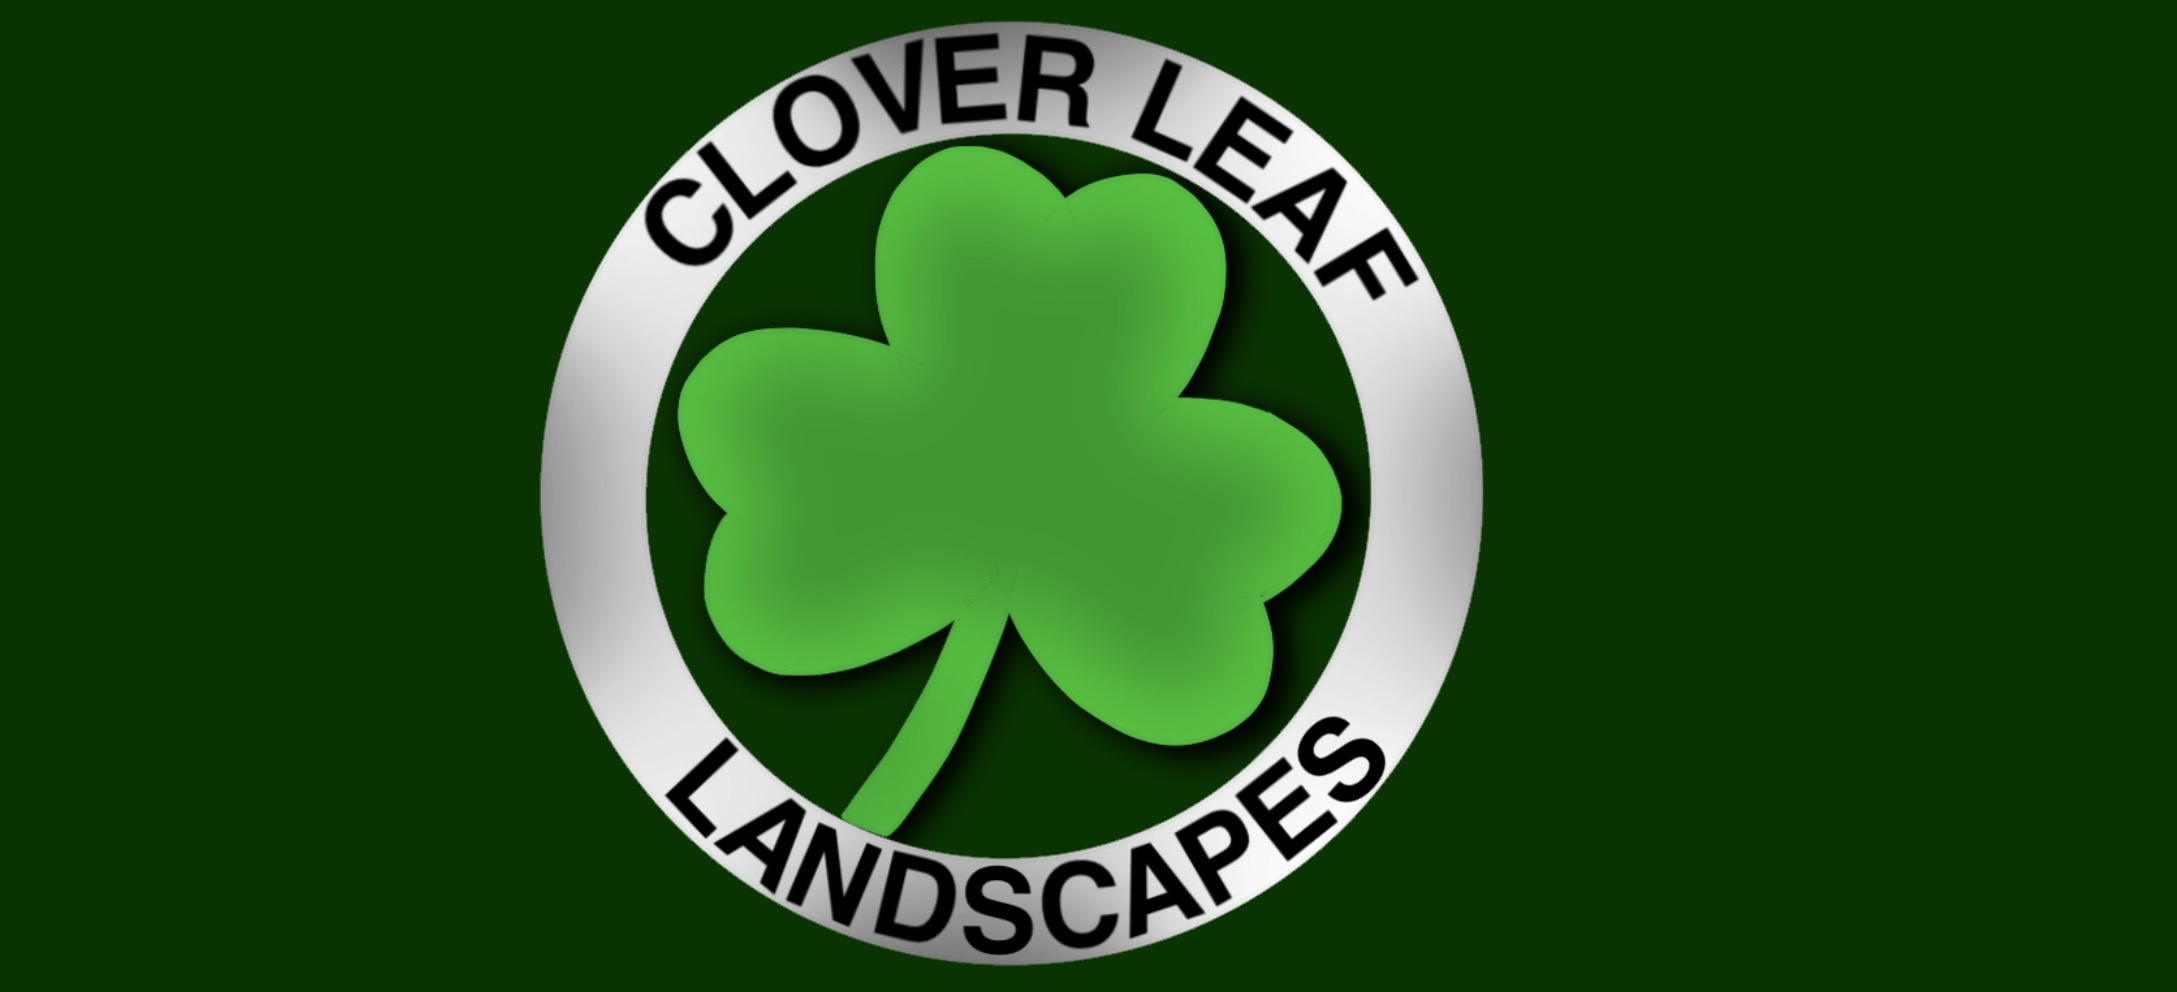 Cloverleaf Landscapes Logo